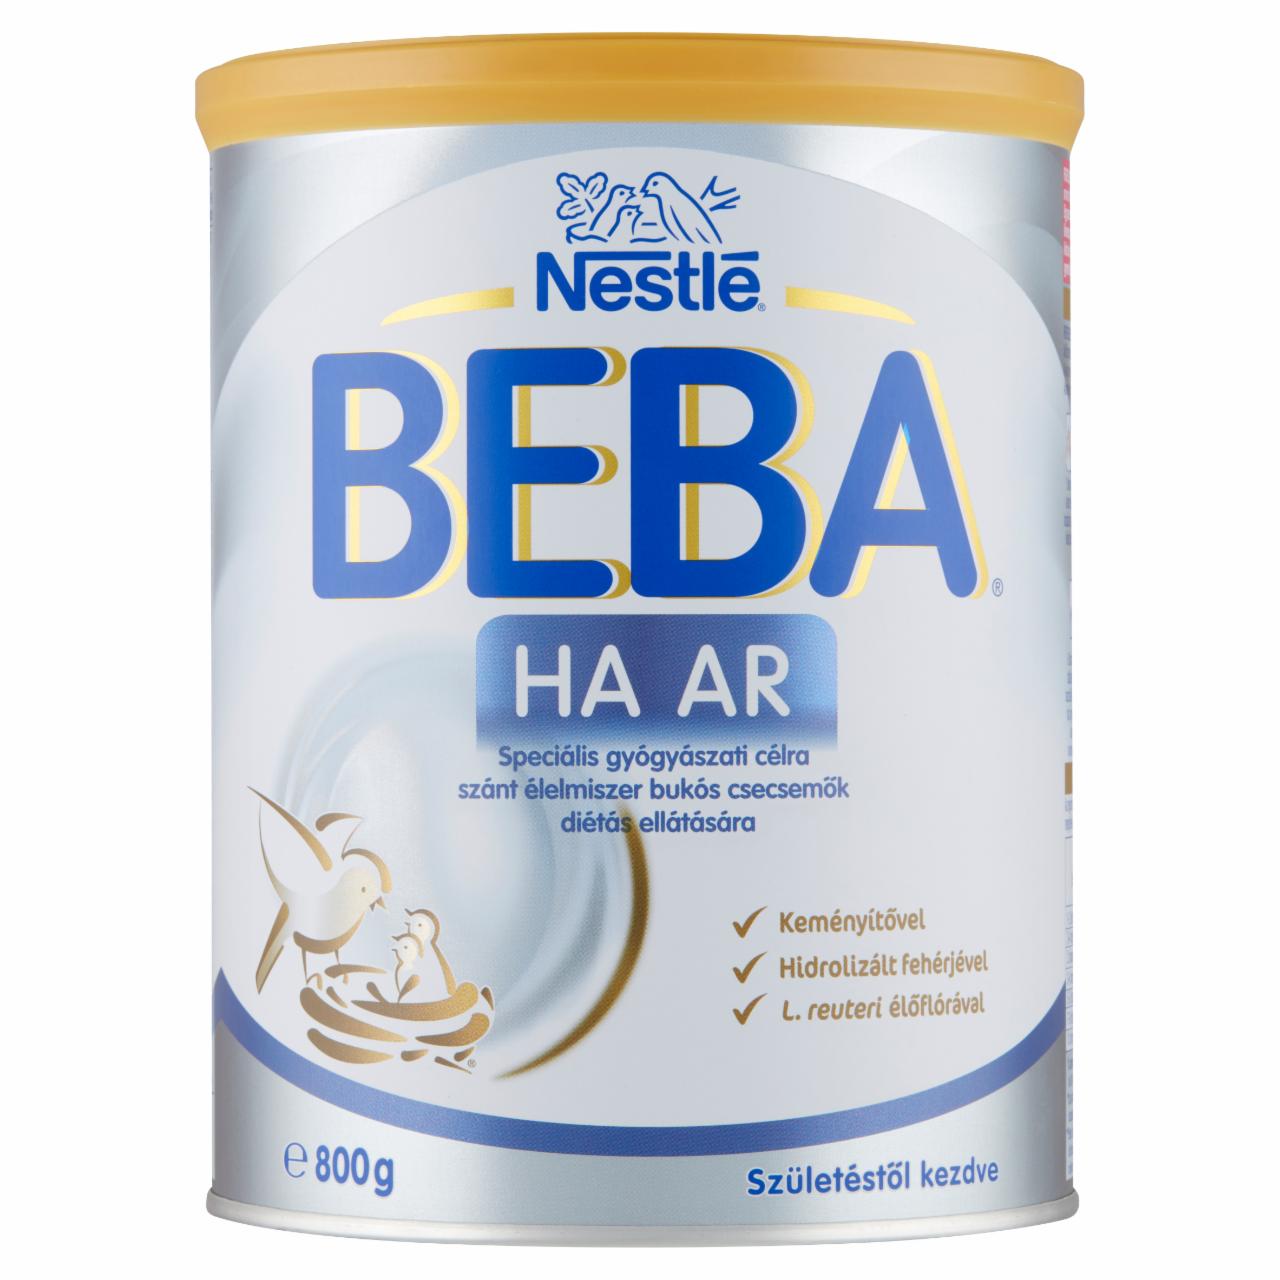 Képek - Beba HA AR speciális gyógyászati célra szánt élelmiszer születéstől kezdve 800 g